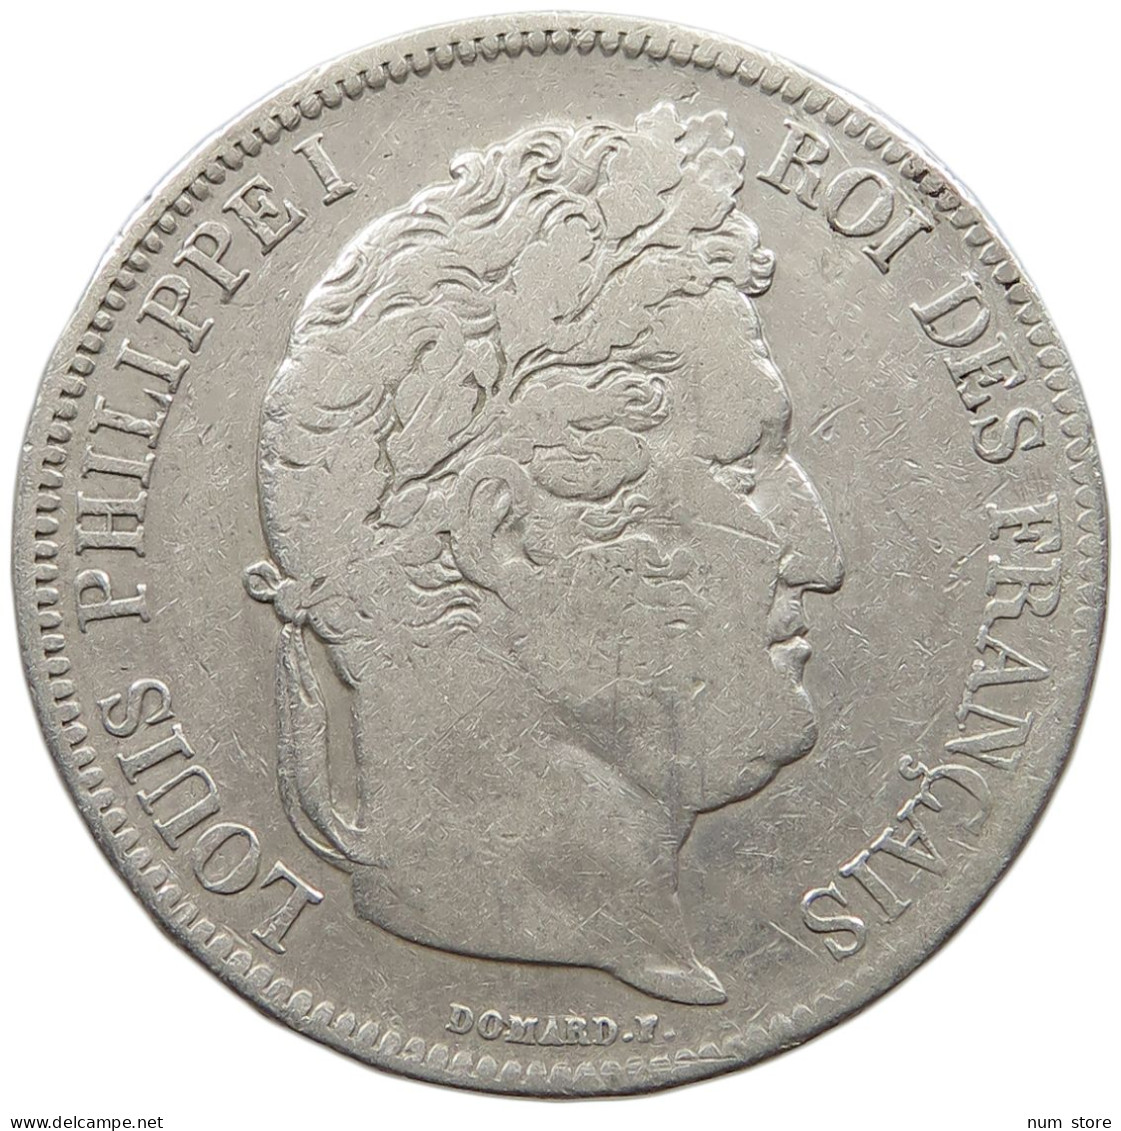 FRANCE 5 FRANCS 1833 M LOUIS PHILIPPE I. #MA 025889 - 5 Francs